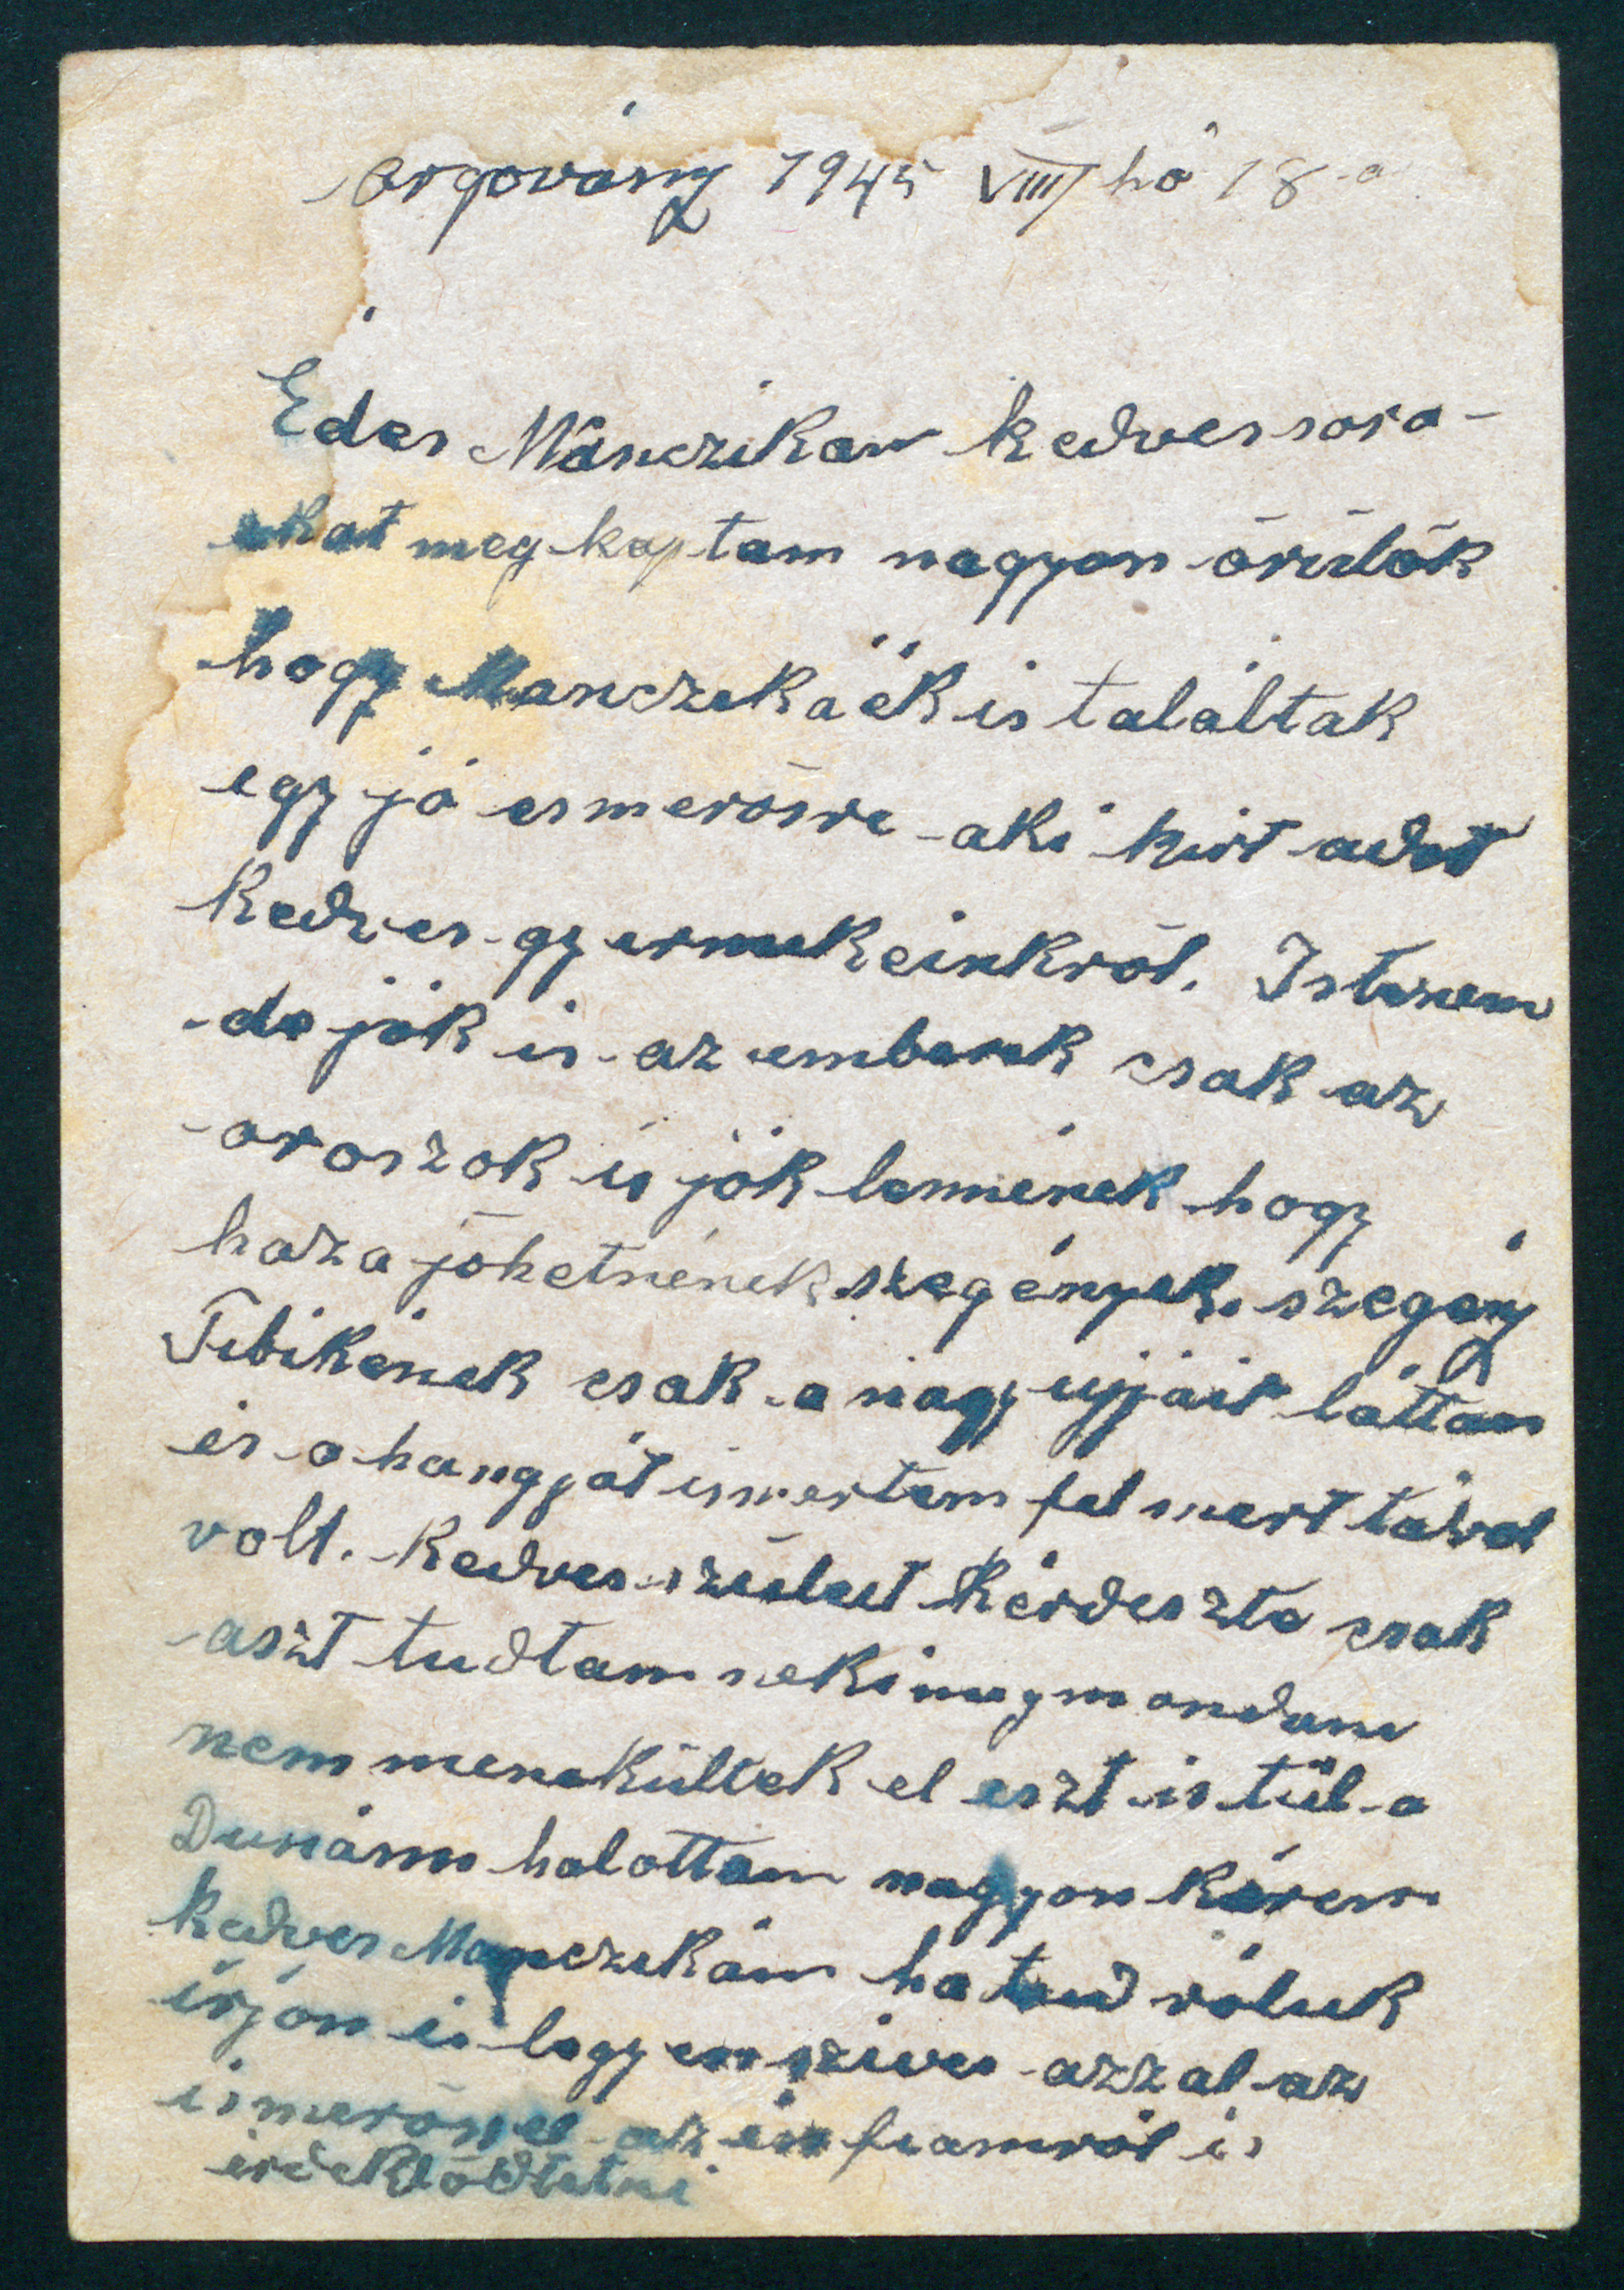 Felföldi Kálmán levele Eördögh Tibor nyugalmazott főjegyző úrnak, 1945. augusztus 18.